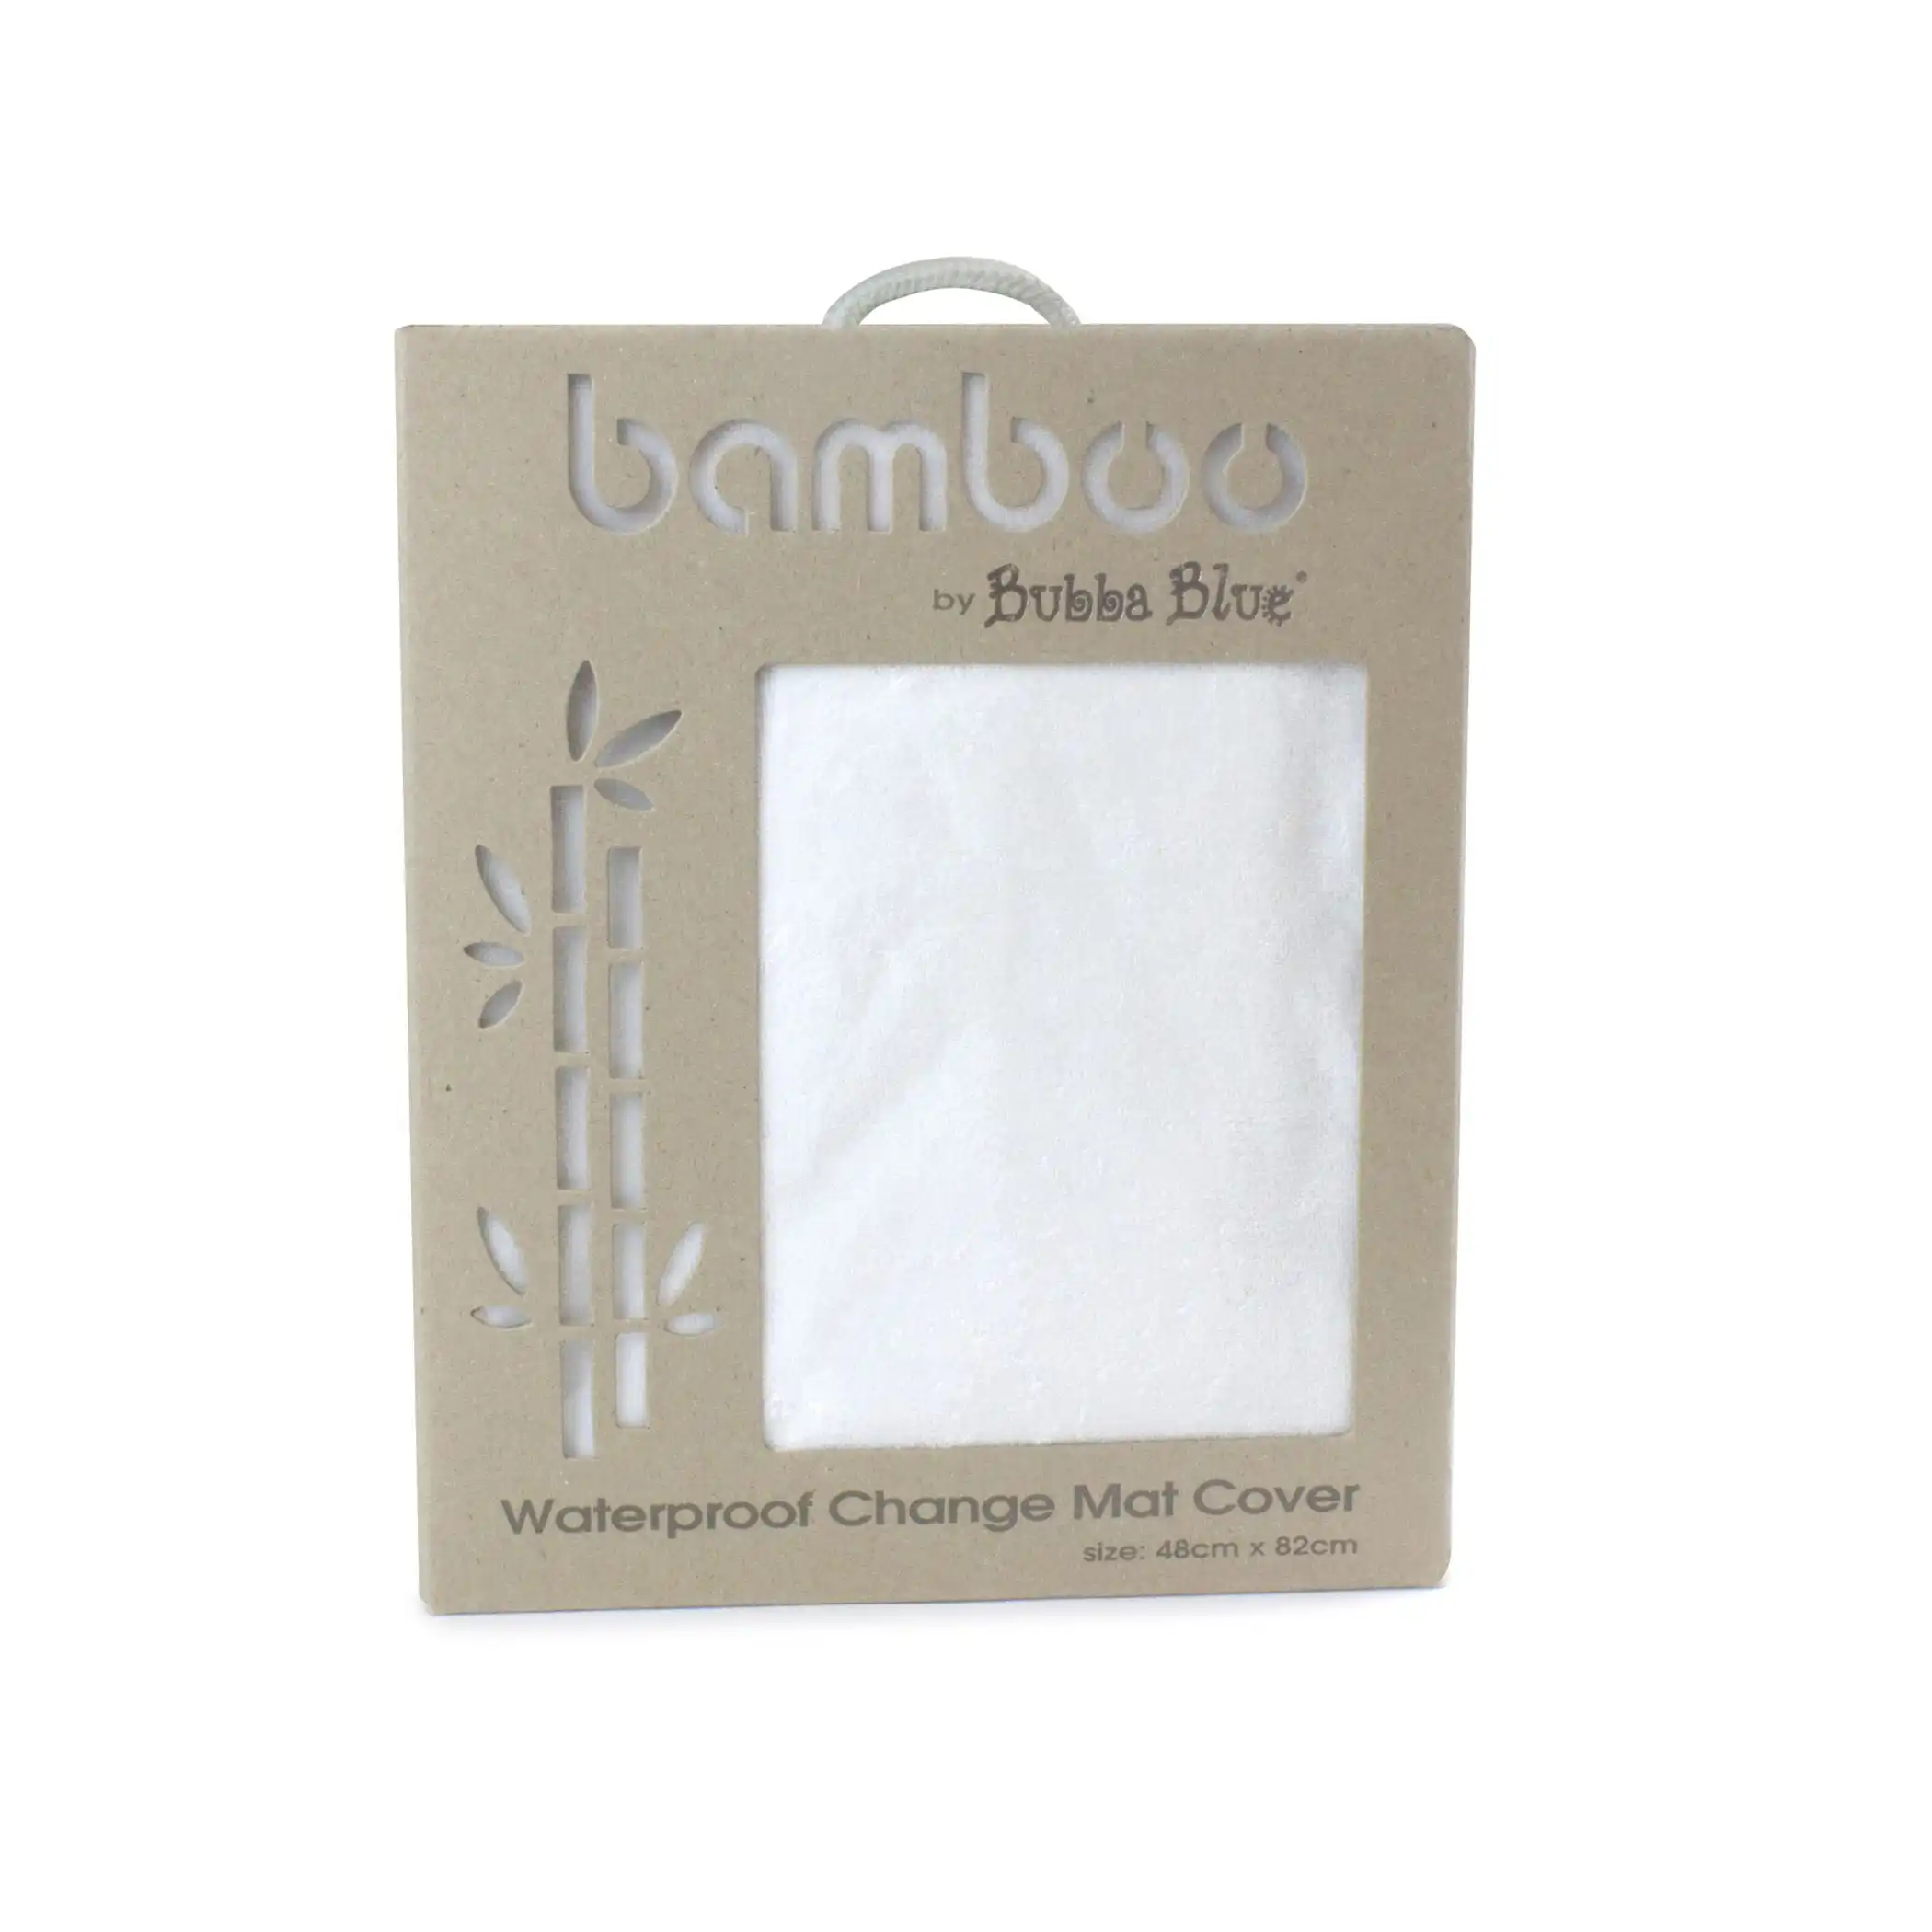 Bubba Blue White Bamboo Waterproof Change Matcover